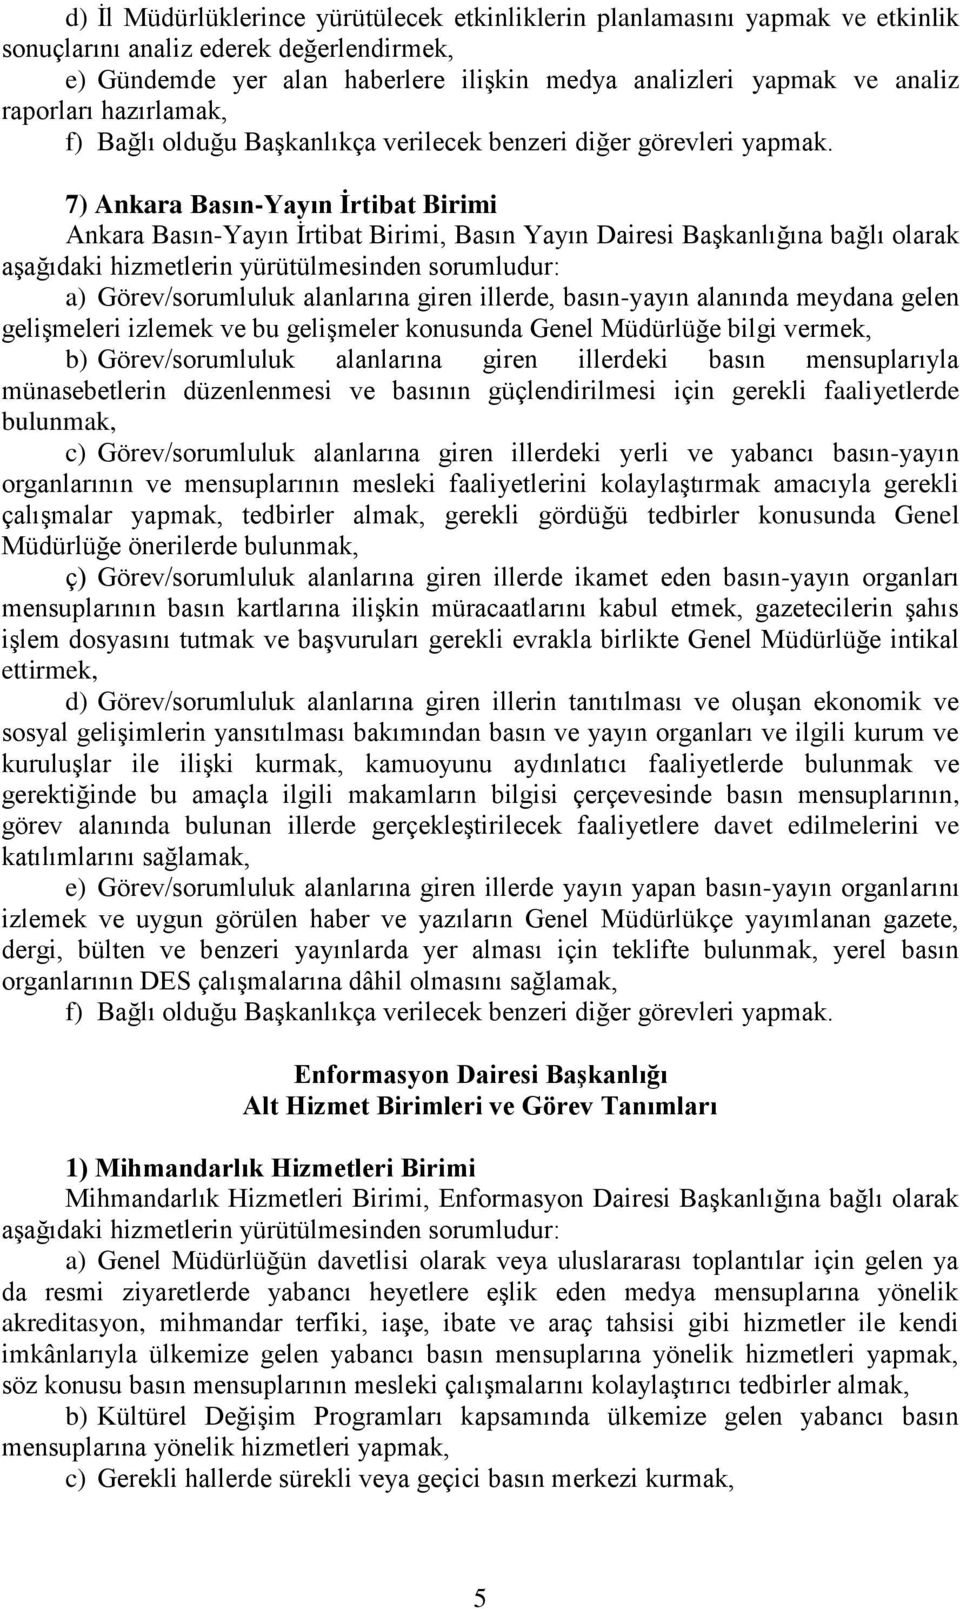 7) Ankara Basın-Yayın İrtibat Birimi Ankara Basın-Yayın İrtibat Birimi, Basın Yayın Dairesi Başkanlığına bağlı olarak a) Görev/sorumluluk alanlarına giren illerde, basın-yayın alanında meydana gelen